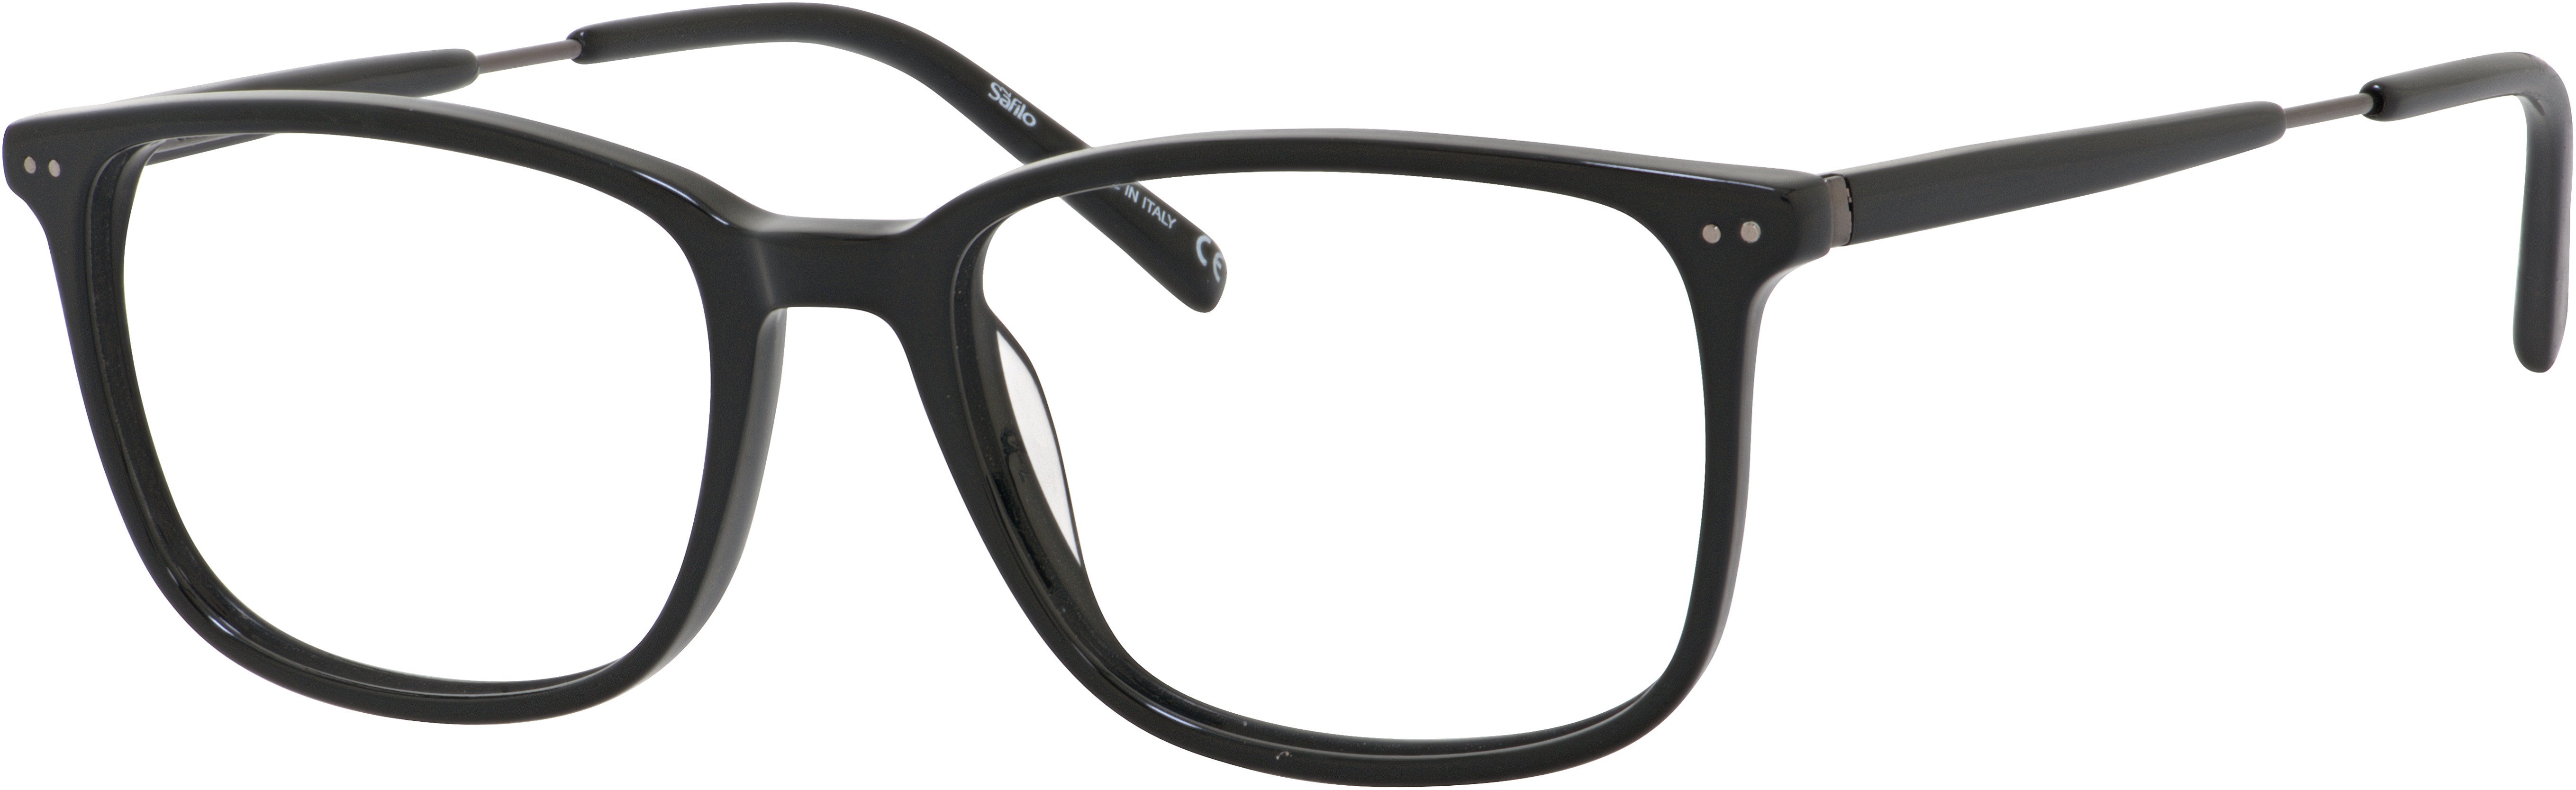  Elasta 1642 Rectangular Eyeglasses 0807-0807  Black (00 Demo Lens)